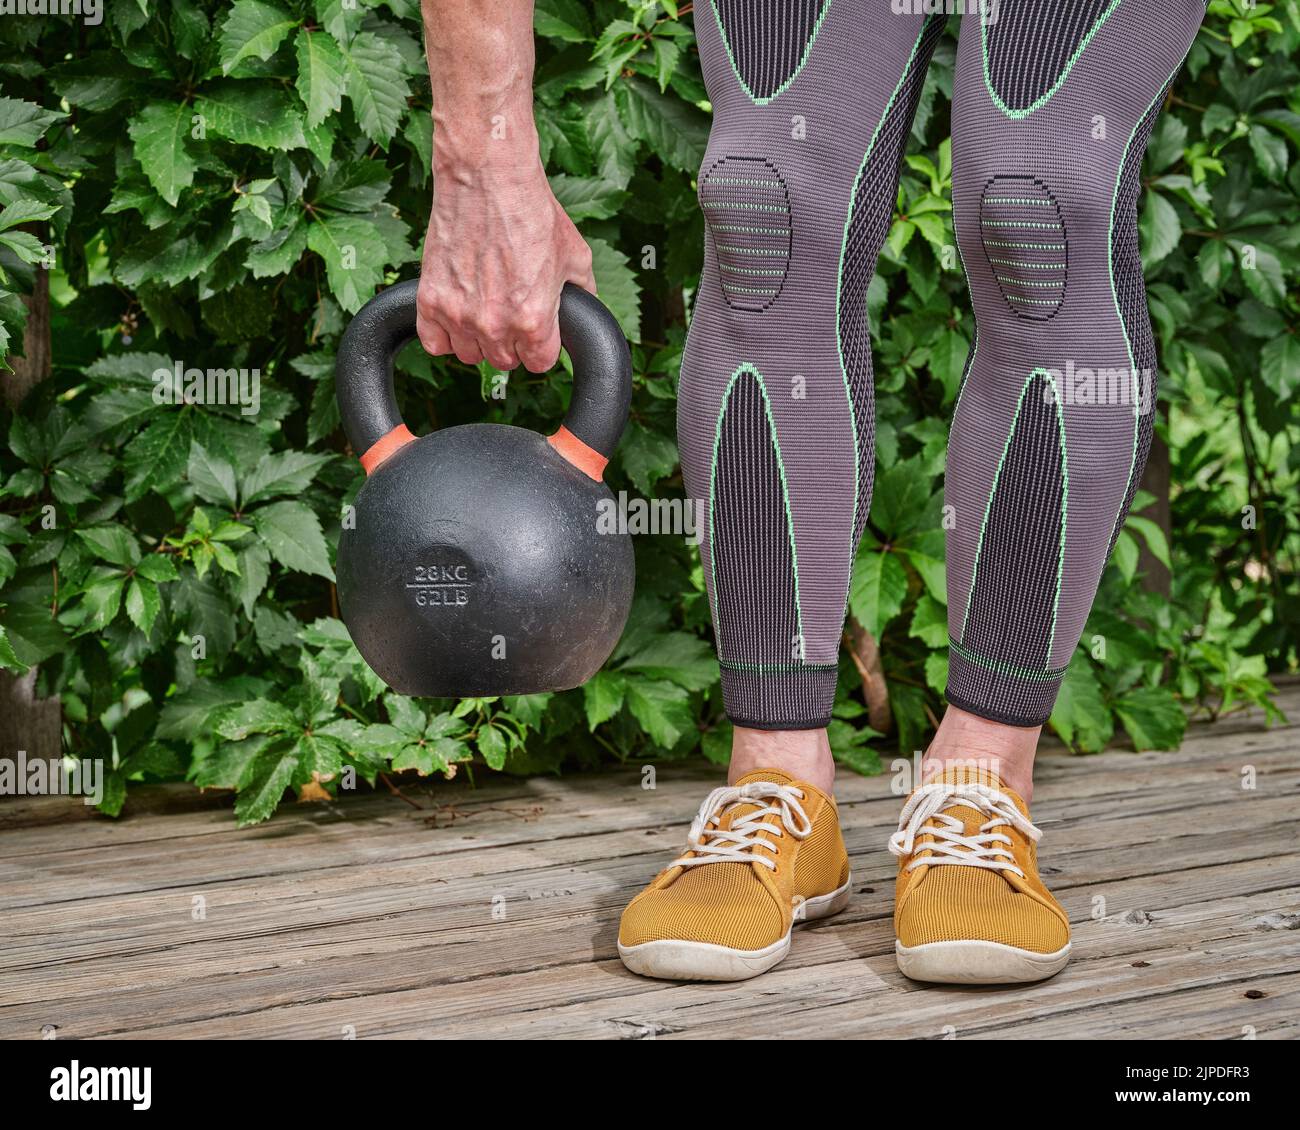 el hombre que usa refuerzos de compresión de rodilla y pantorrilla está haciendo ejercicio con una pesa de hierro en una cubierta de madera de patio trasero Foto de stock